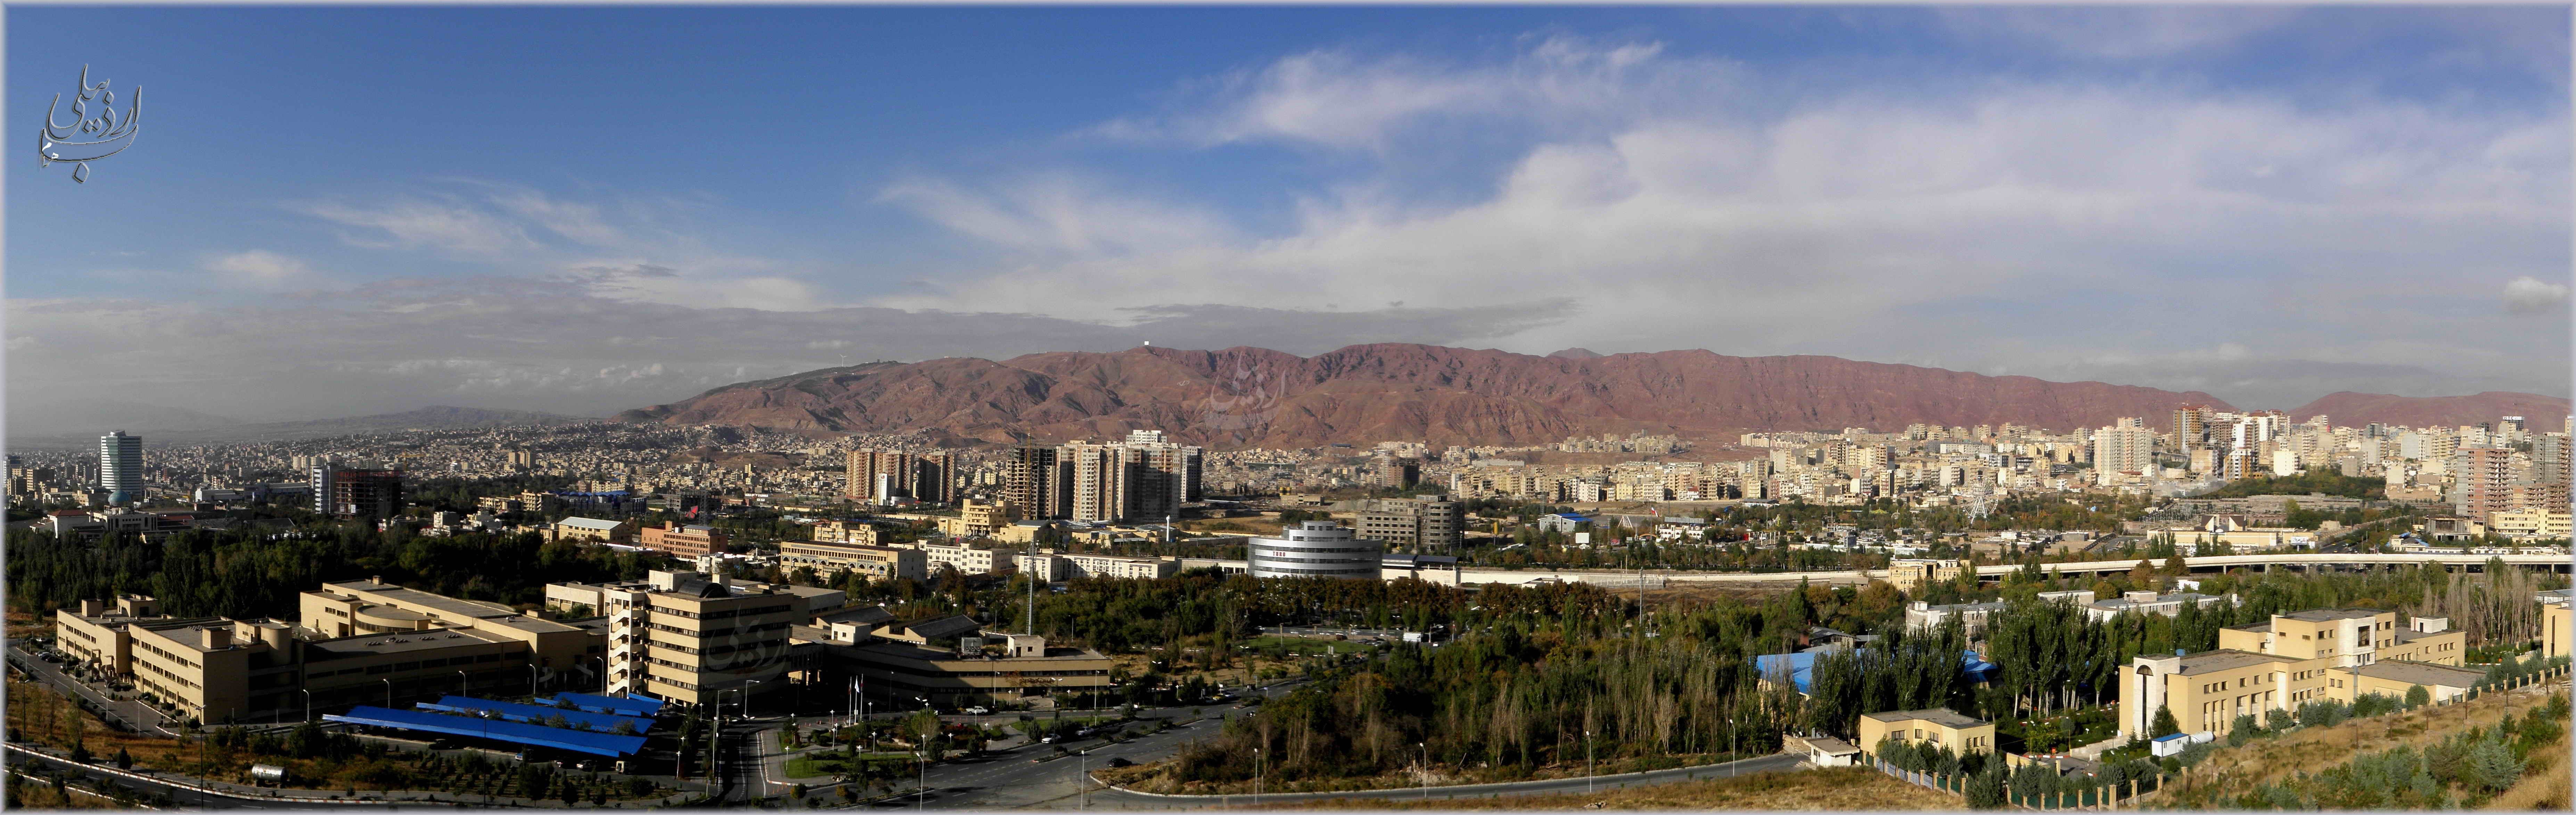 Iran Cityscape City 7414x2347